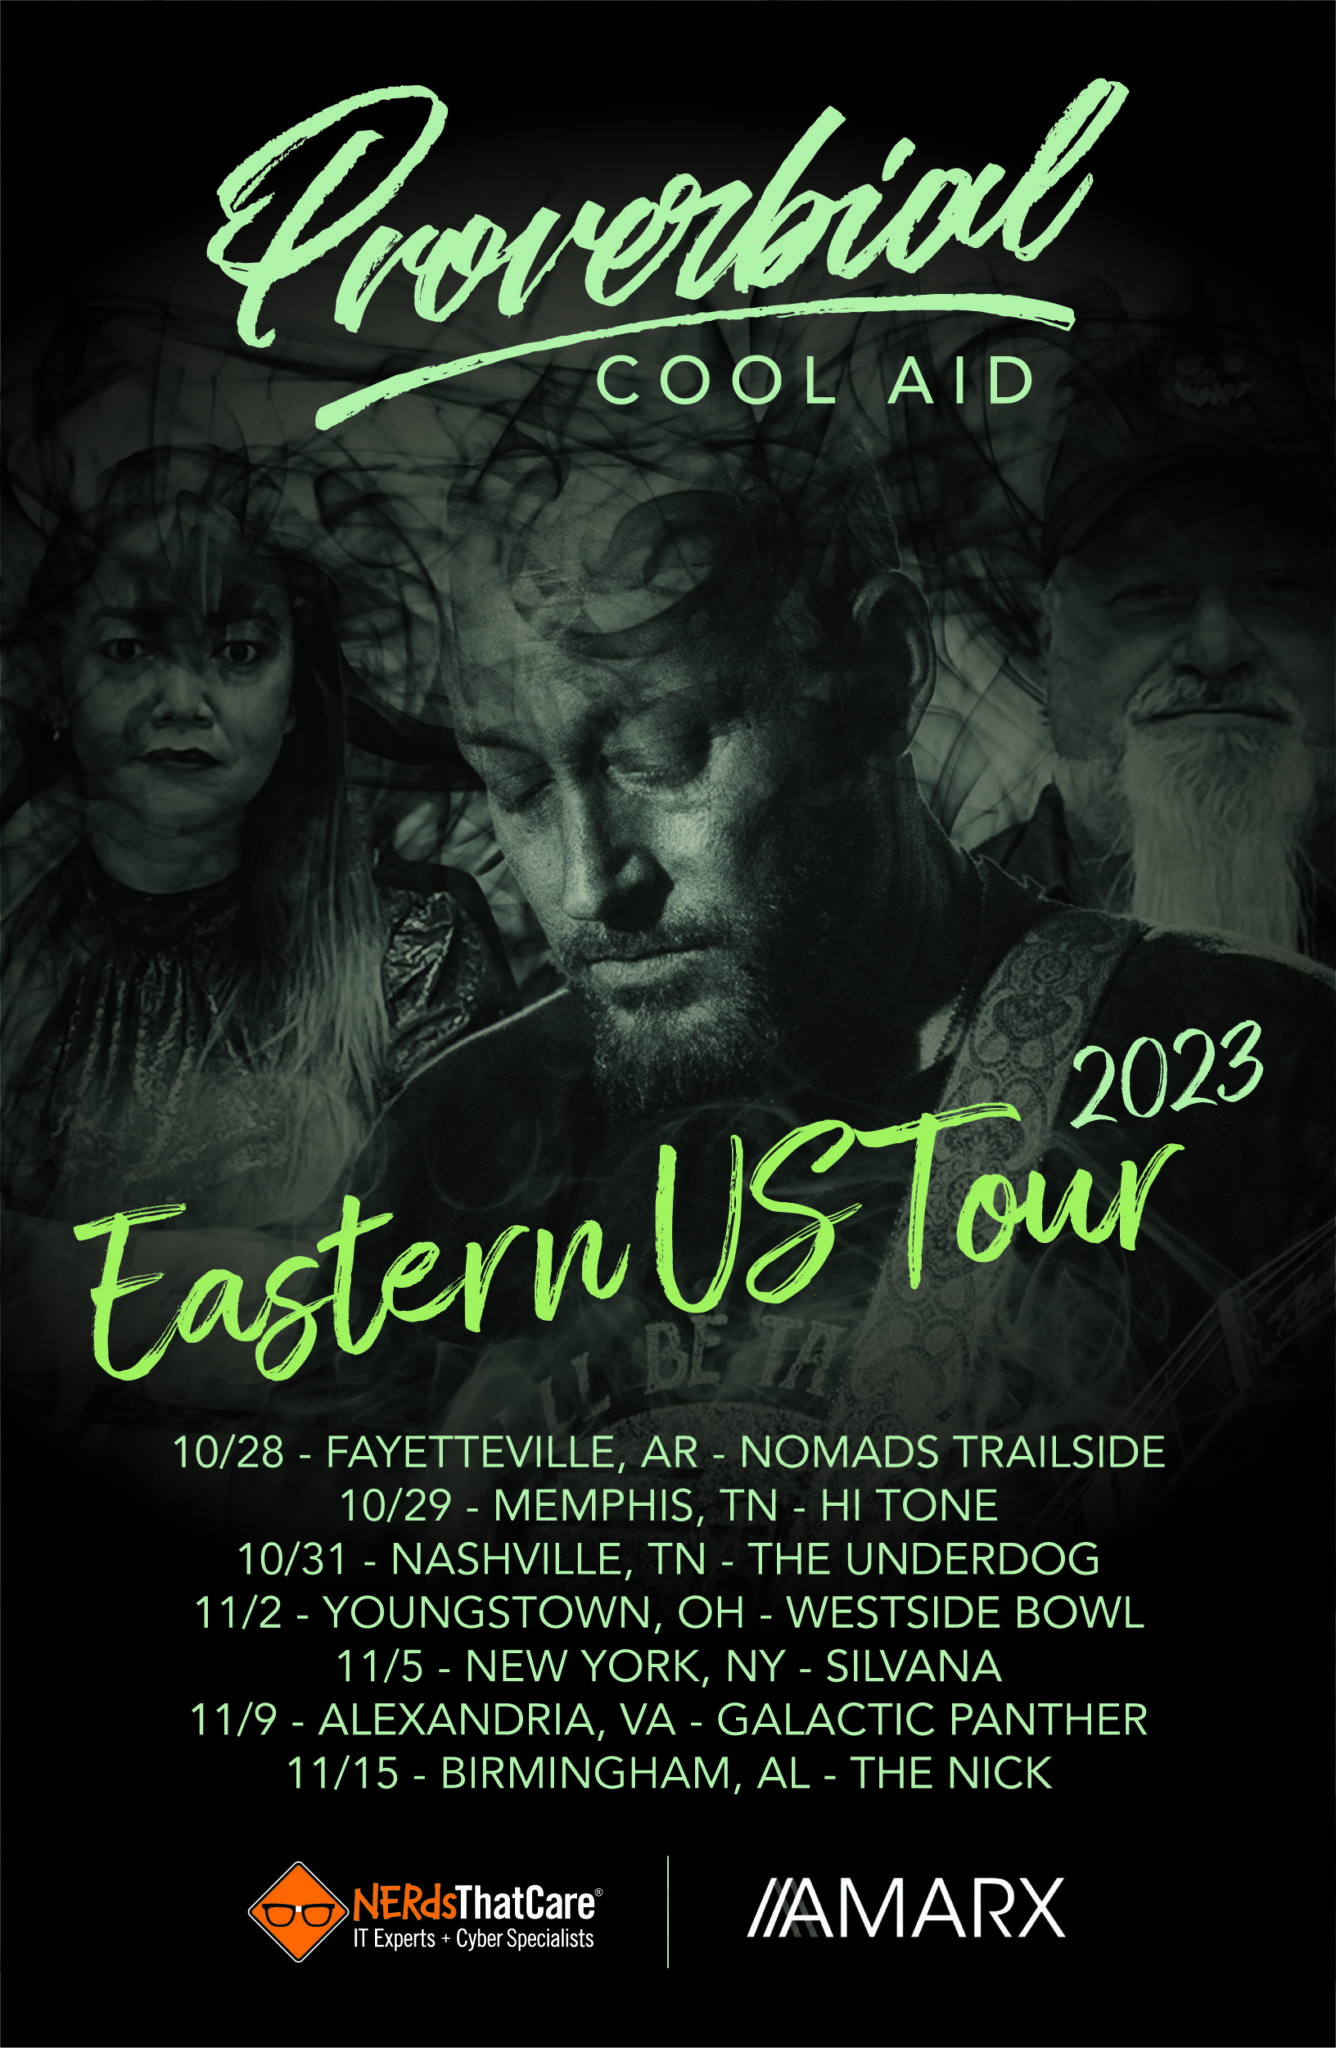 Eastern US Tour